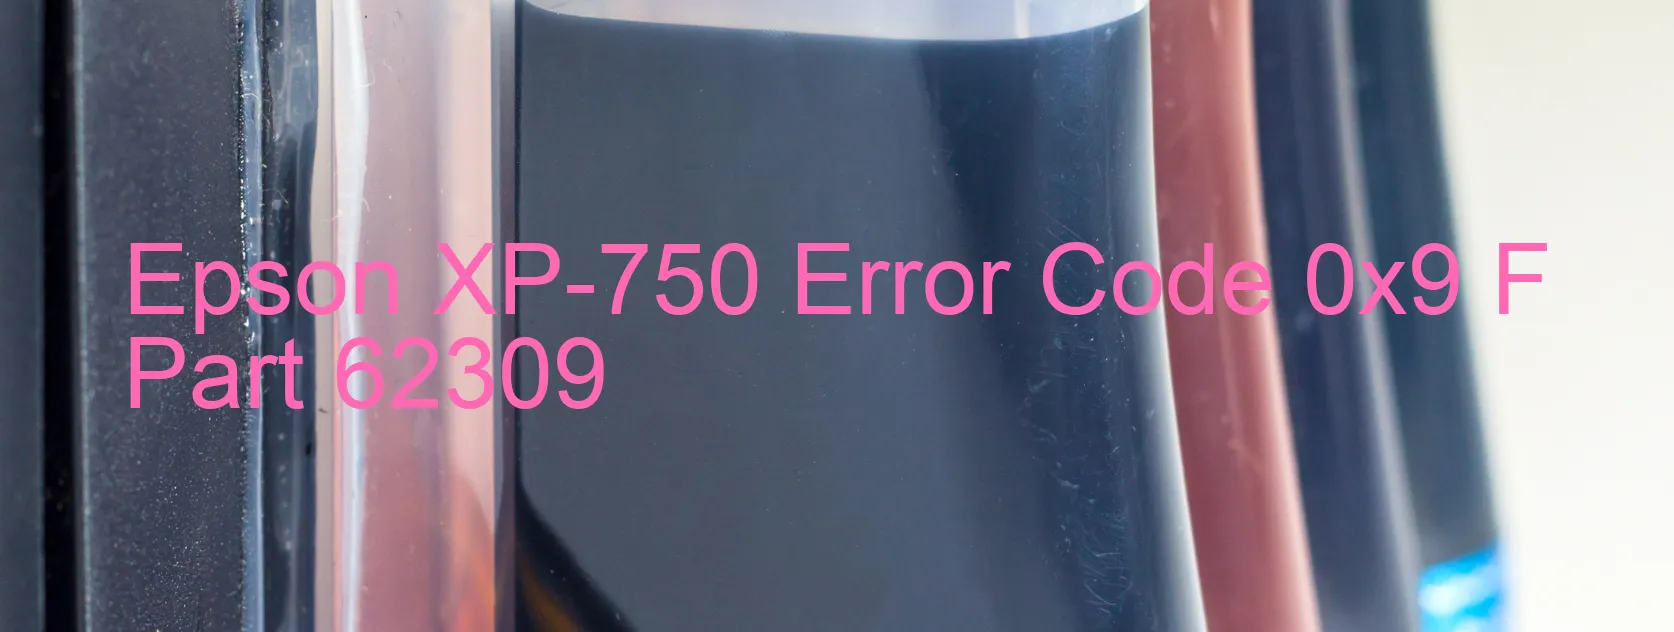 Epson XP-750 Error Code 0x9 F Part 62309